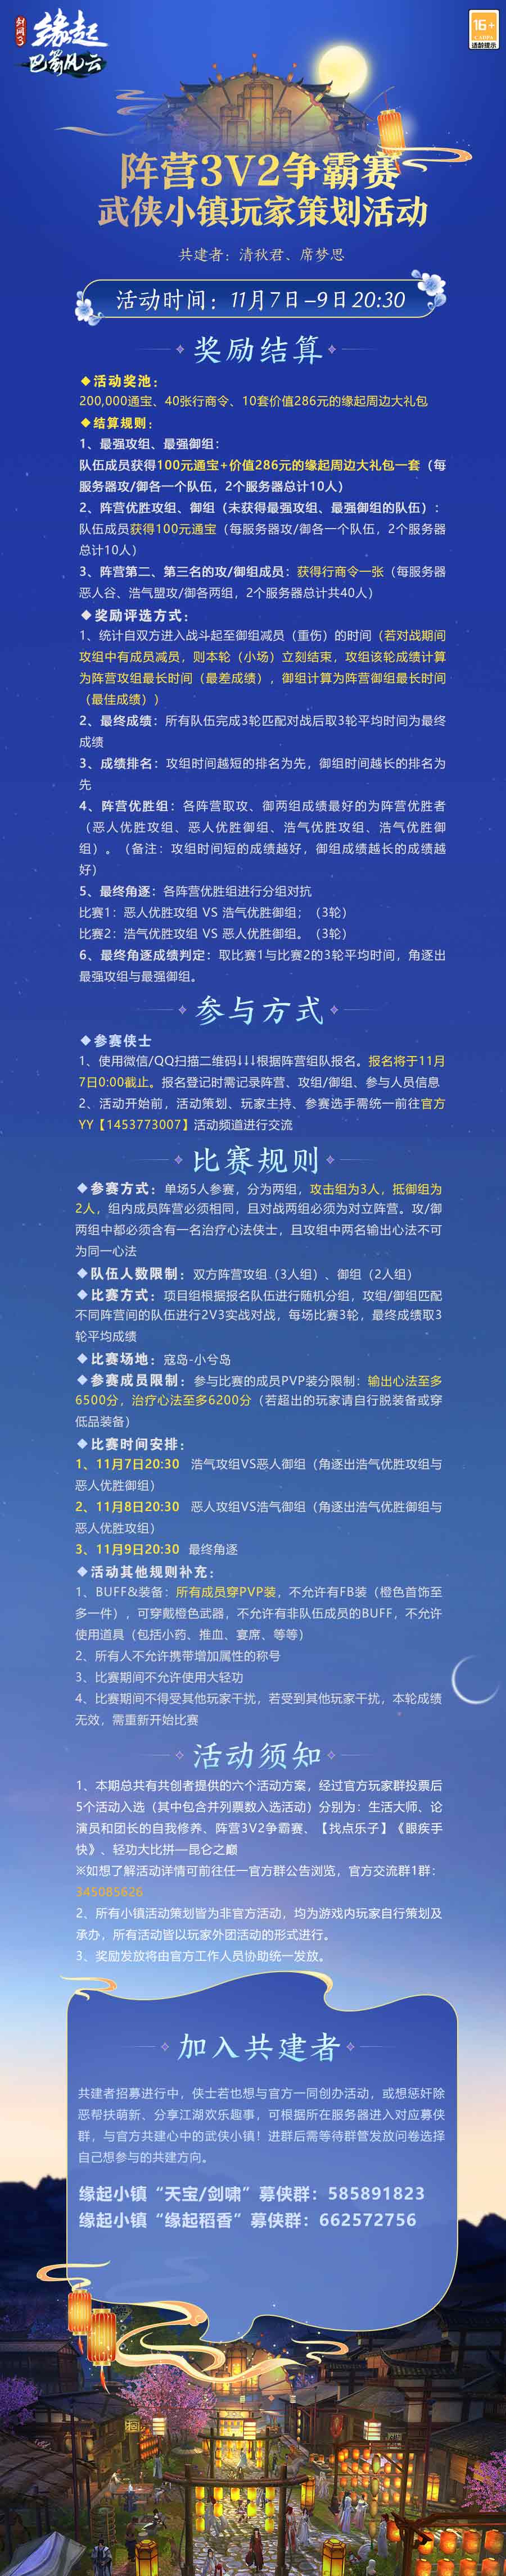 《剑网3缘起》剑湖神宫定档11.24 赛季加速活动开启